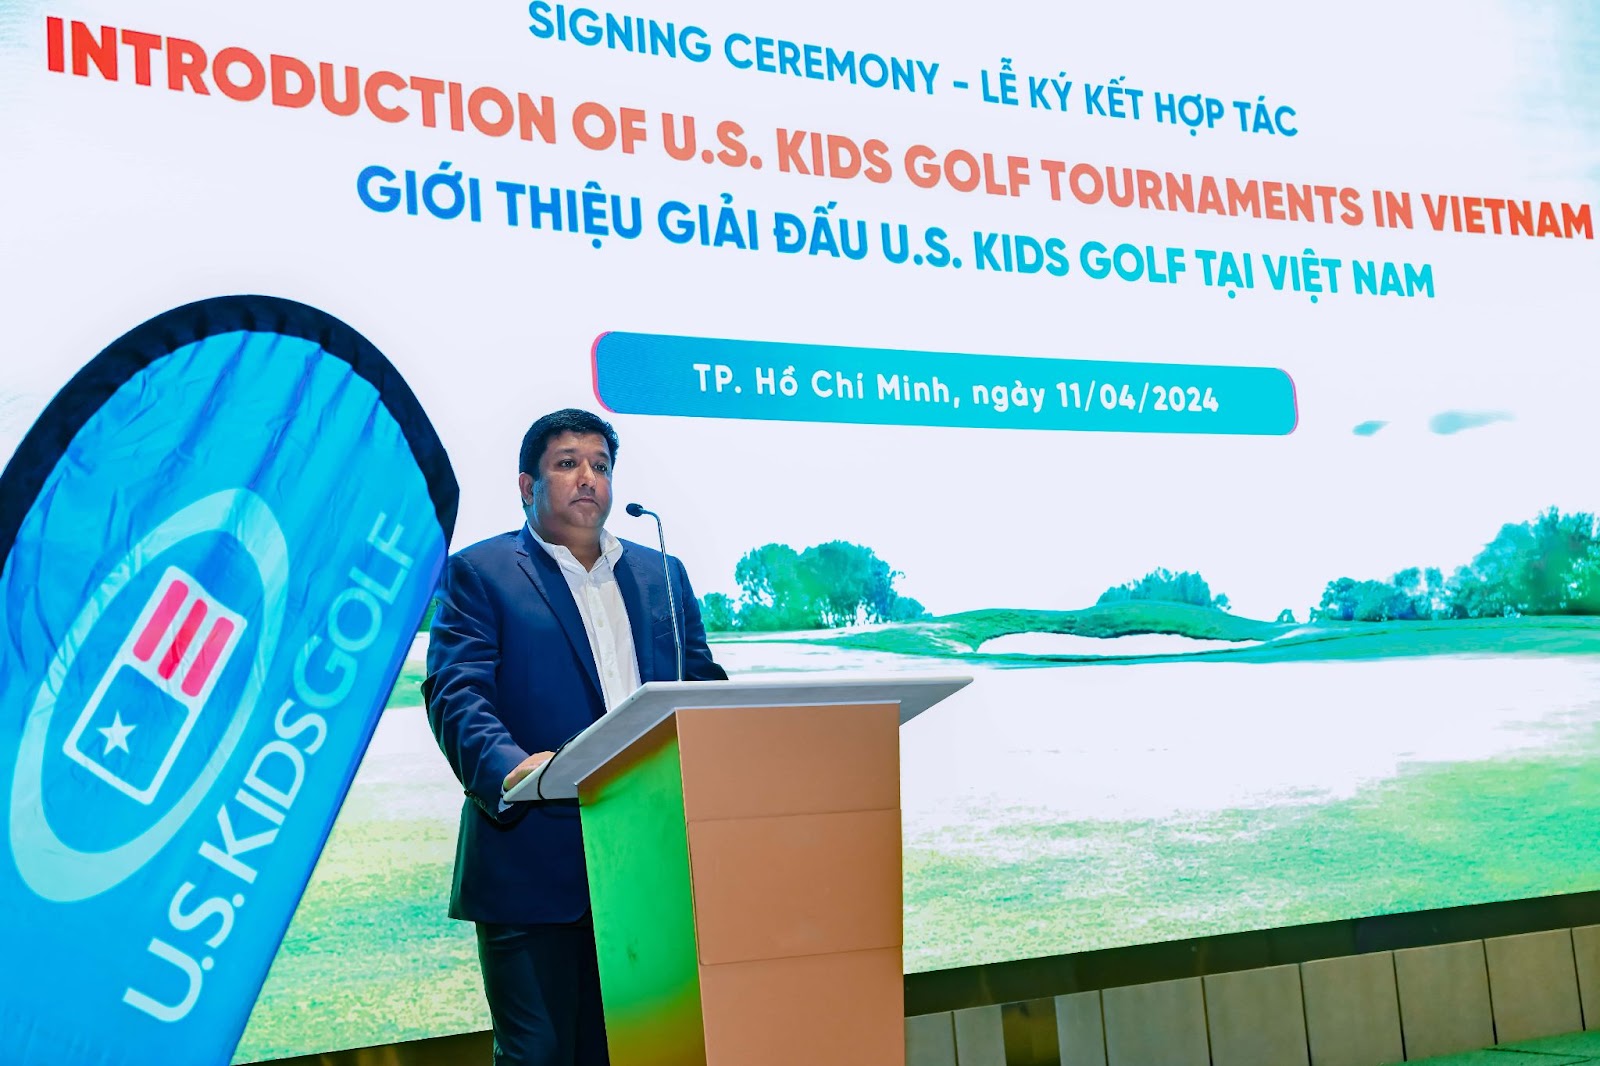 Ông Rajesh Srivastava – Chủ tịch U.S. Kids Golf Ấn Độ và U.S. Kids Golf Châu Á đánh giá Việt Nam là một quốc gia hội tụ đủ các tiềm năng phát triển bộ môn thể thao này. “Chúng tôi rất hào hứng khi mở rộng tầm ảnh hưởng của U.S. Kids Golf tới Việt Nam – một thị trường tiềm năng tại Châu Á. Chúng tôi cam kết sẽ chuyển giao những kiến thức, kinh nghiệm, công cụ và nguồn lực quốc tế theo đúng tiêu chuẩn toàn cầu của U.S. Kids Golf đến các đối tác tại Việt Nam, qua đó giúp các golf thủ nhí phát huy tài năng và thúc đẩy sự phát triển toàn diện của các em,” ông Rajesh phát biểu. 